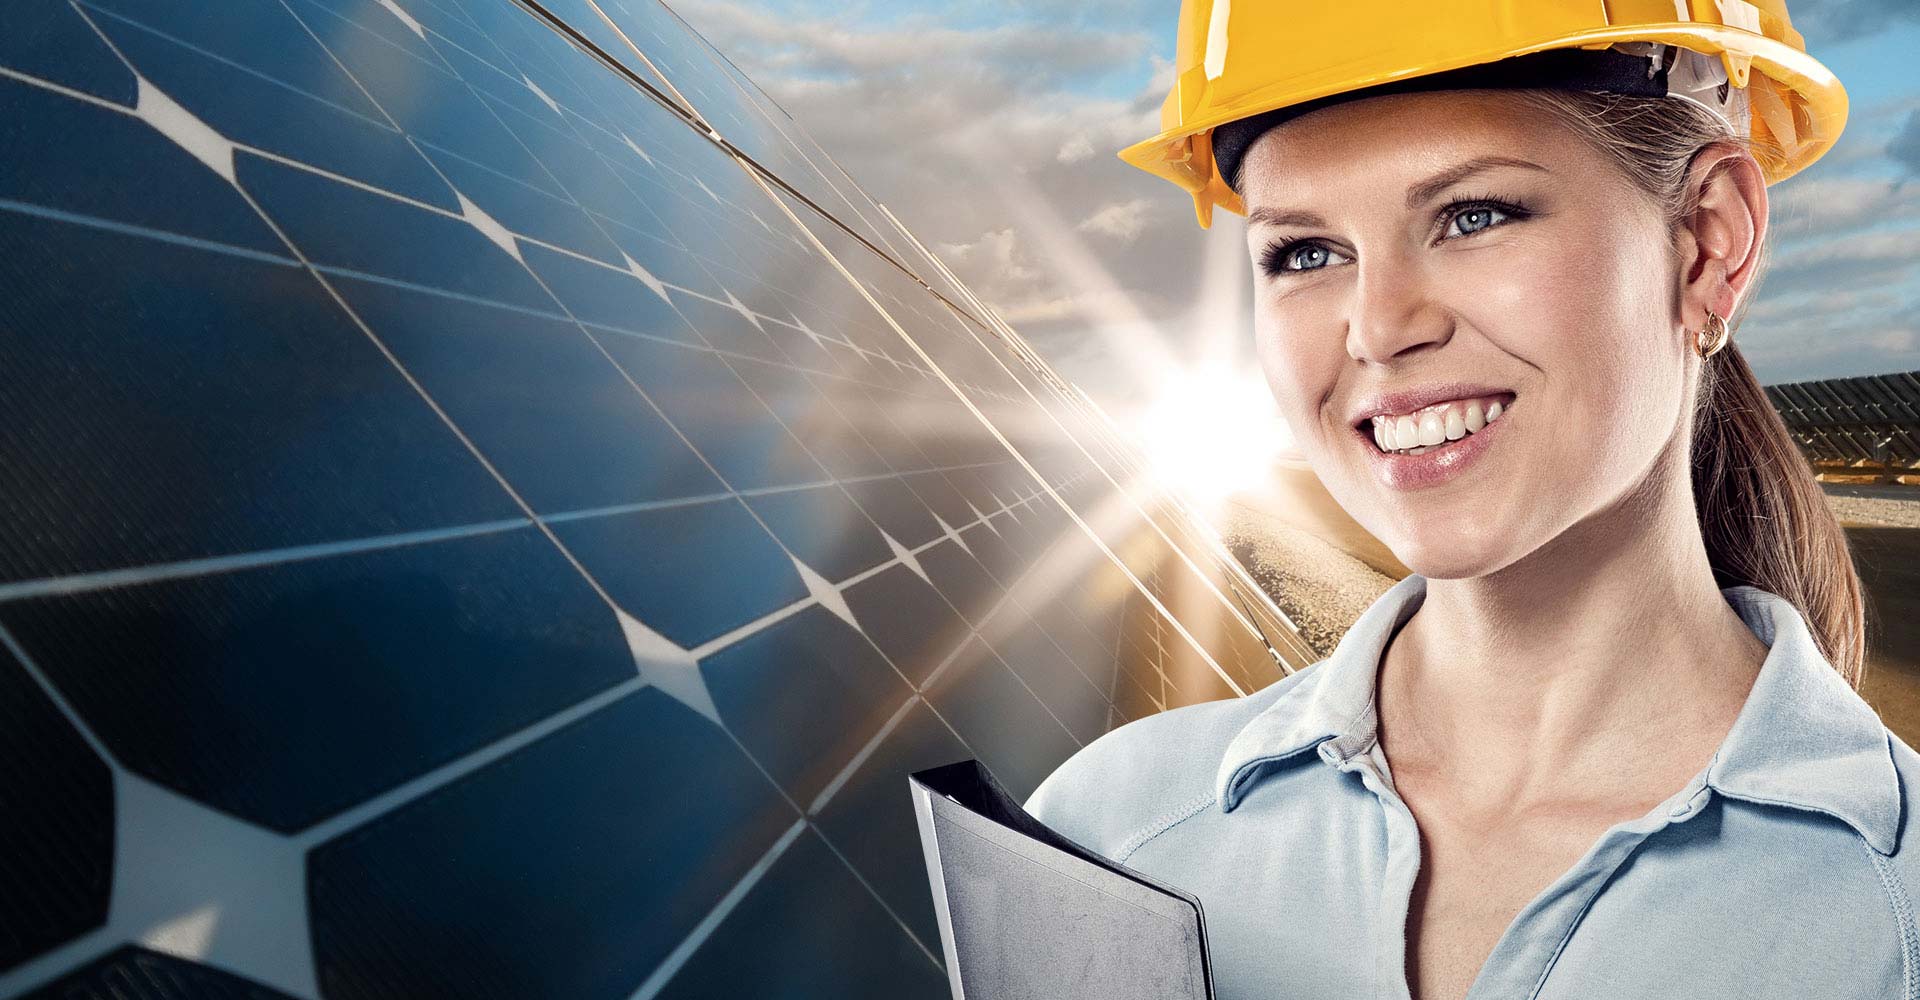 RNI Solar - As melhores soluções para energia solar e fotovoltaica